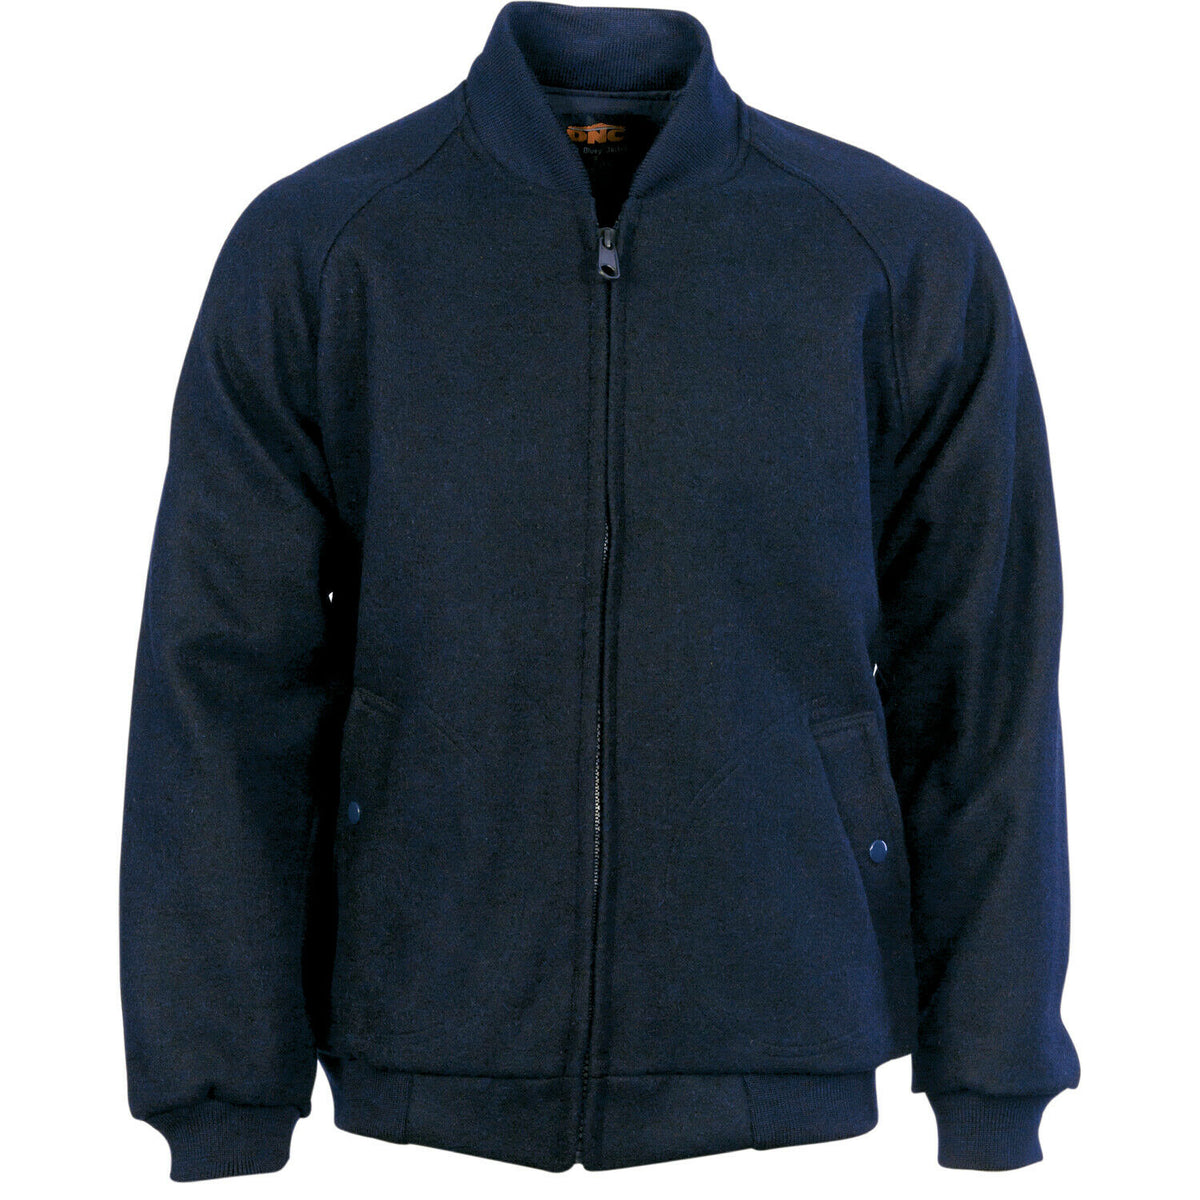 DNC Workwear Urban Jacket Flying Jacket - Plastic Zips Winter Work Wear 3605